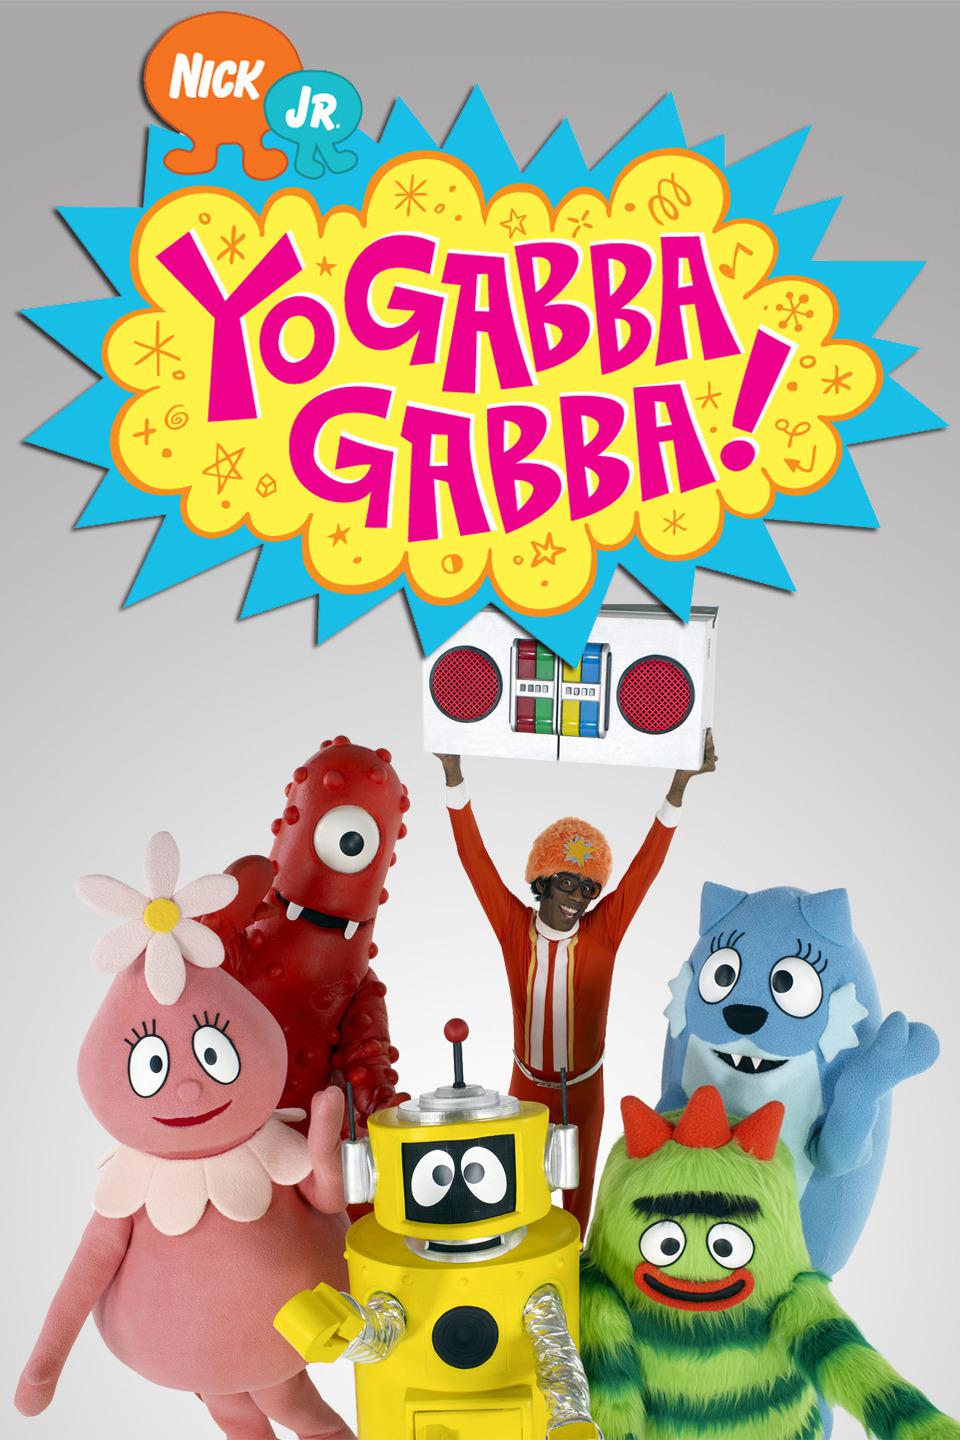 TV ratings for Yo Gabba Gabba! in Japan. Nick Jr. TV series